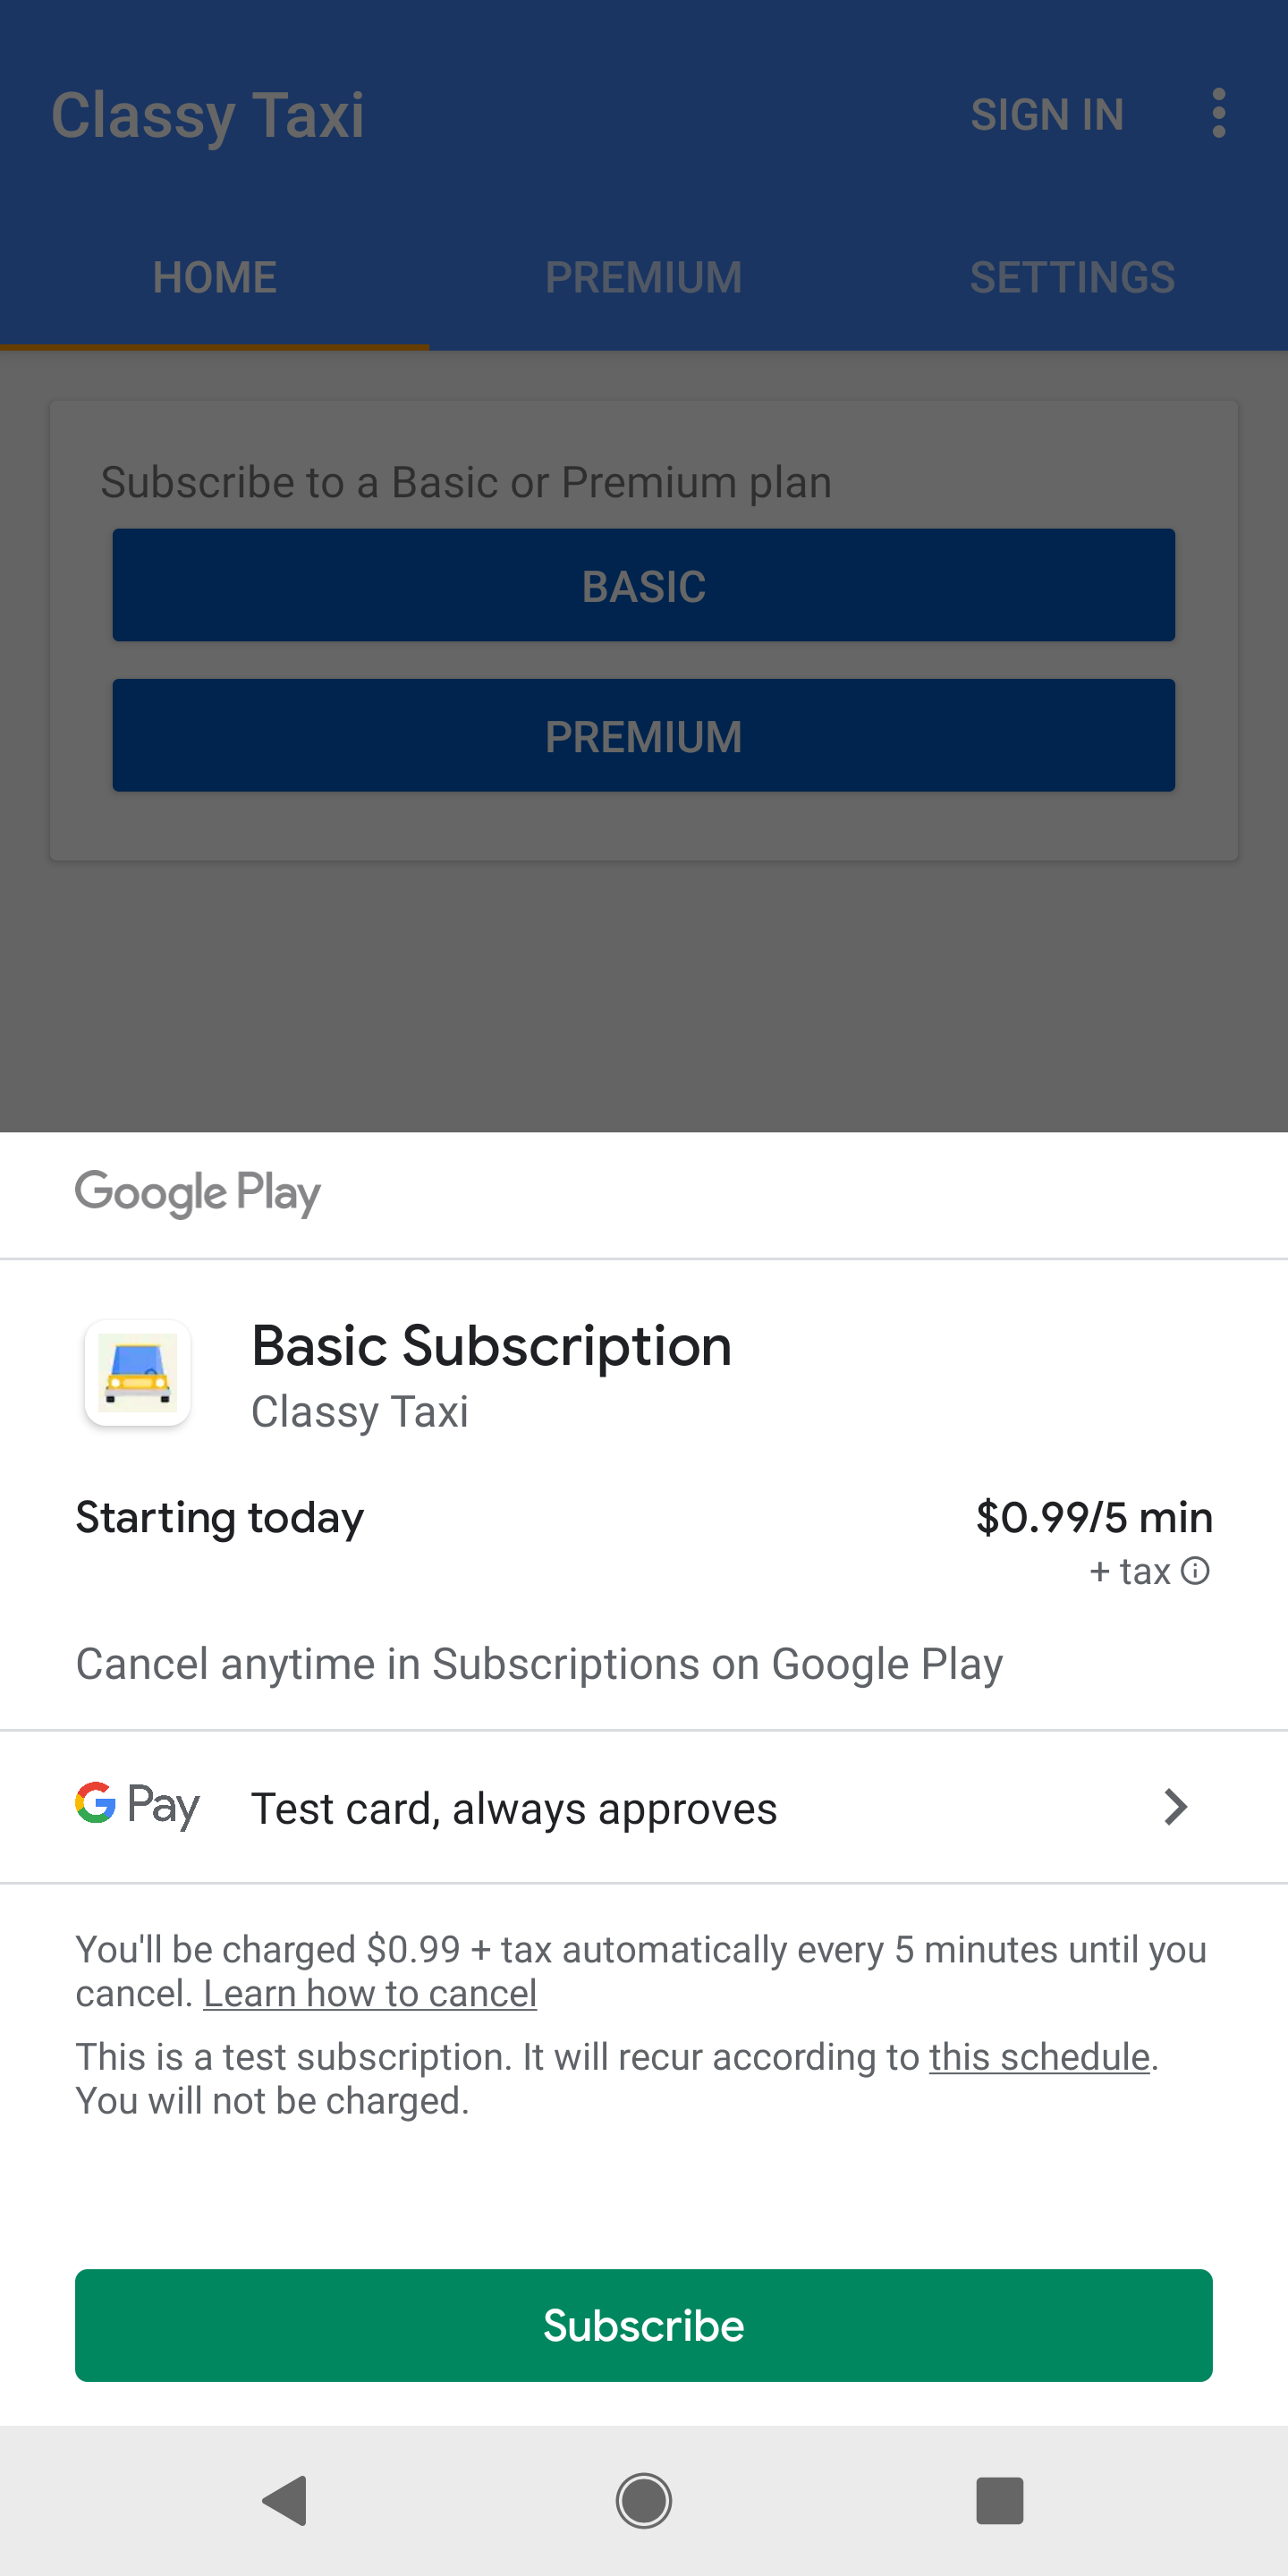 Google Play 购买界面显示了一项可供购买的订阅